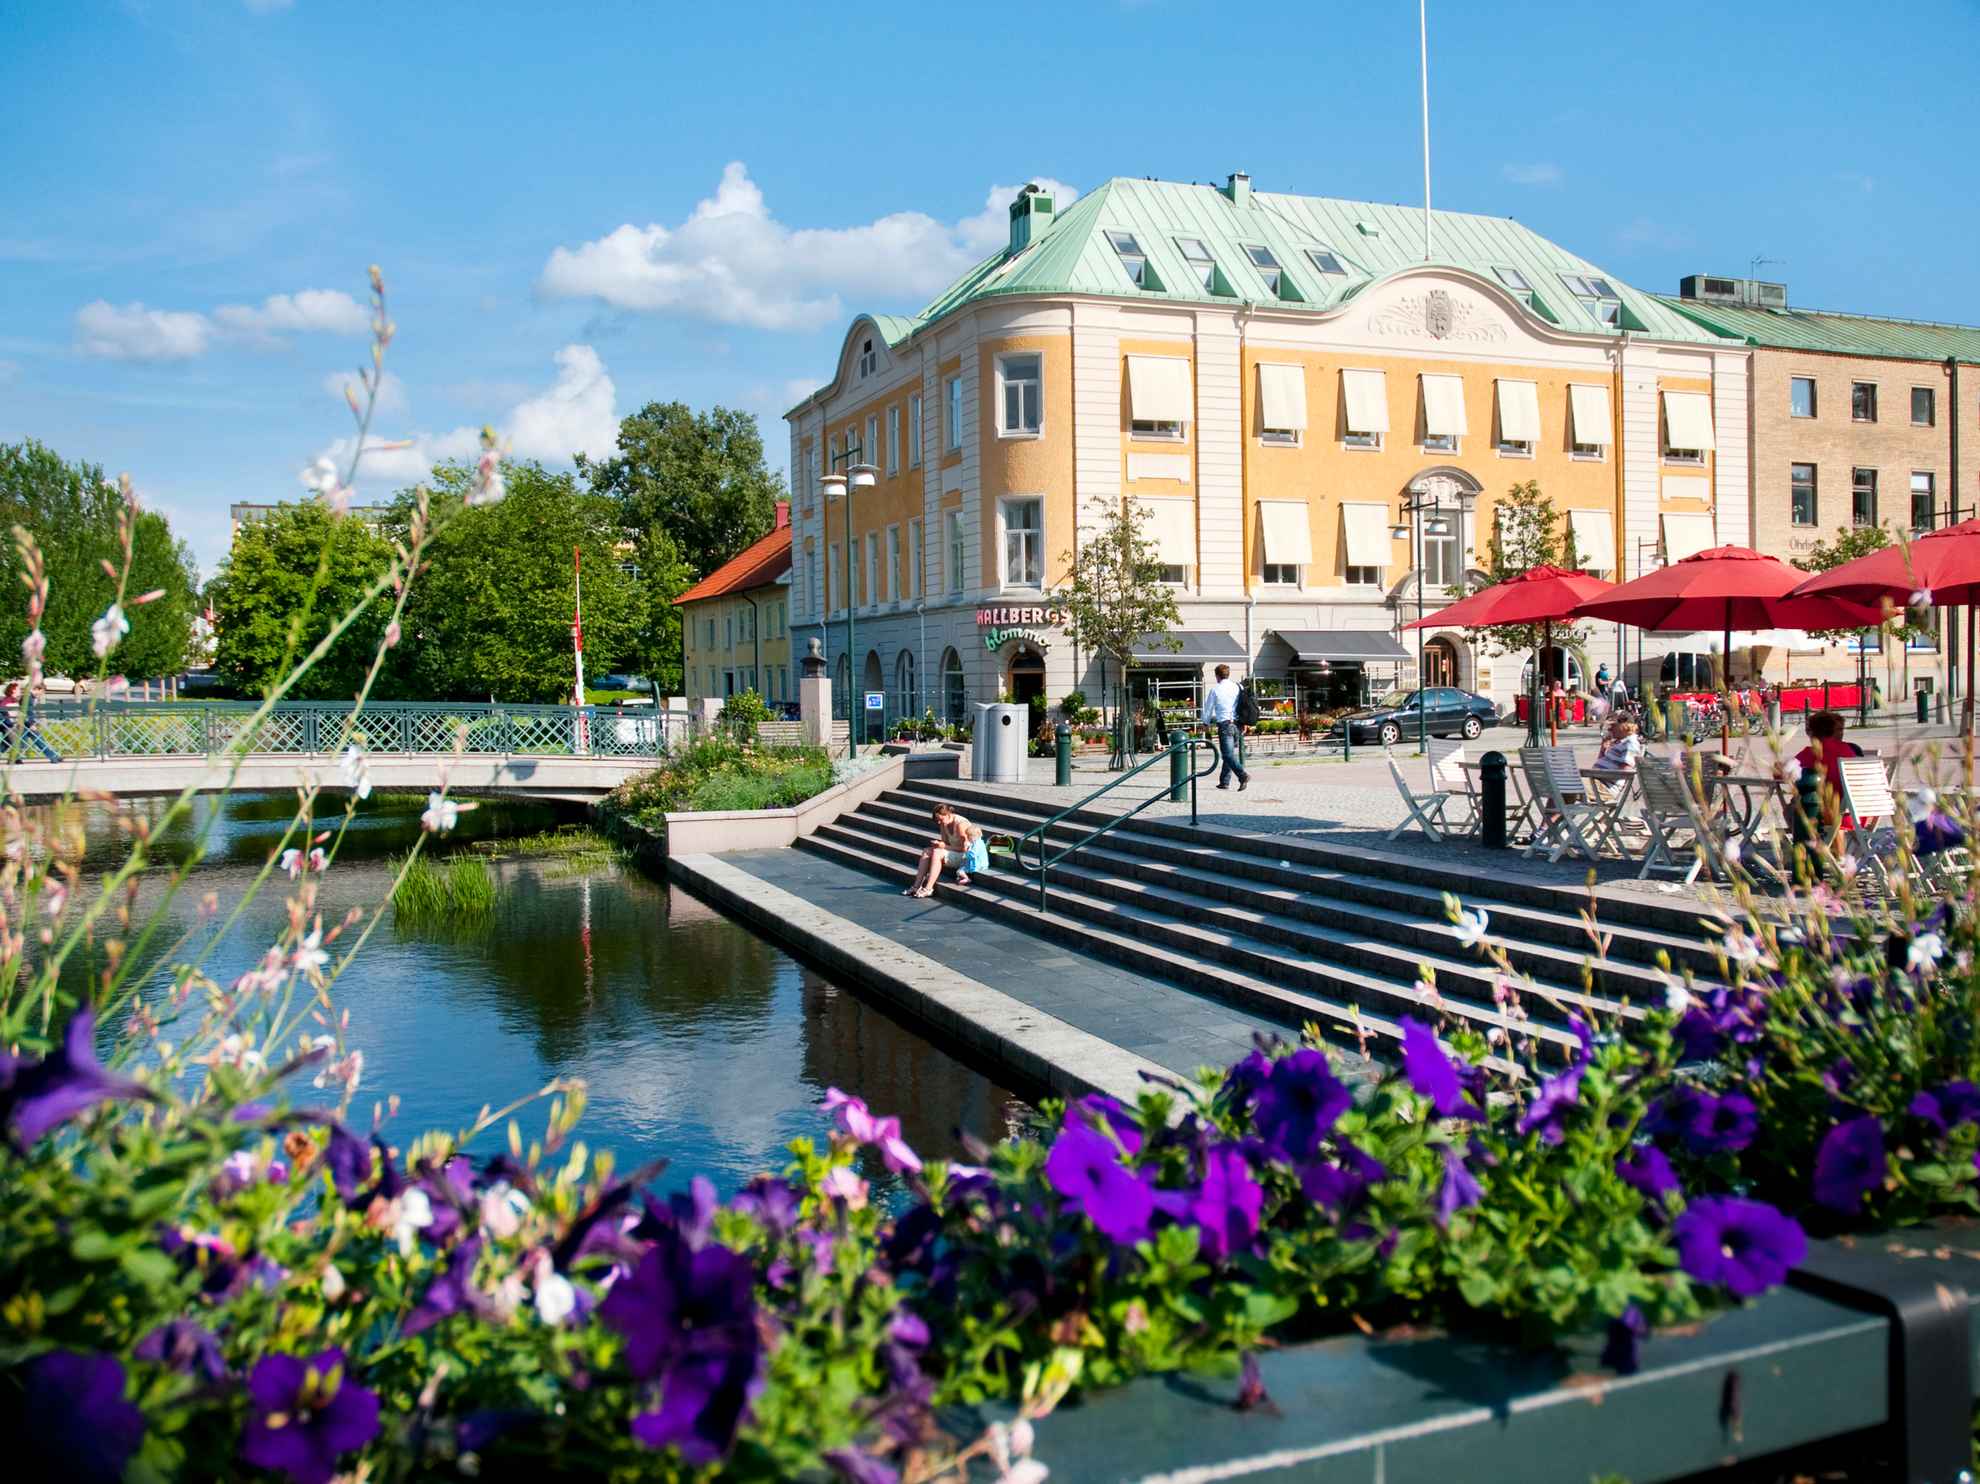 Zonnige dag in Alingsås. Stadscentrum met trappen en een brug over Lillån. Paarse bloemen op de voorgrond.